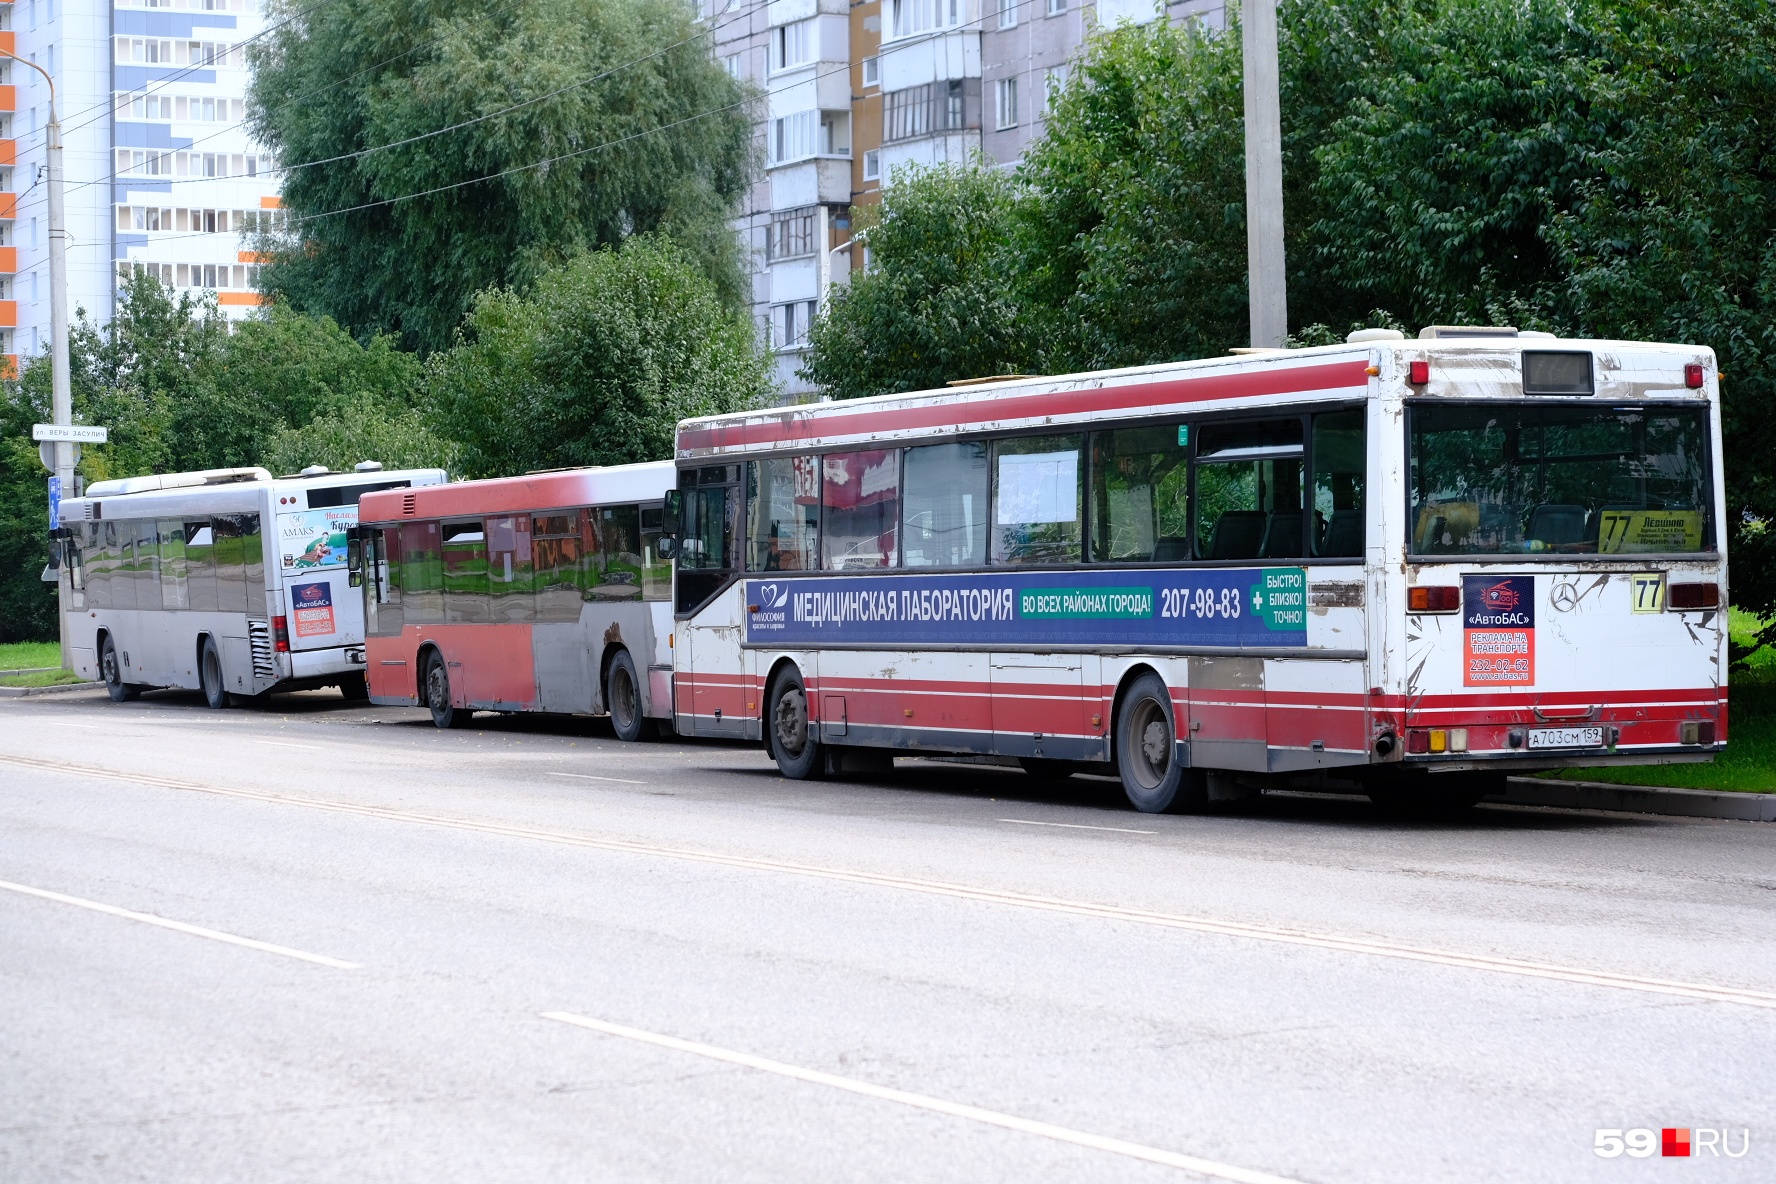 Автобус 49 заозерье. 49 Автобус Пермь. 60 Автобус Пермь. 49 Автобус Пермь новый. Автобус Пермь внутри Гайва.